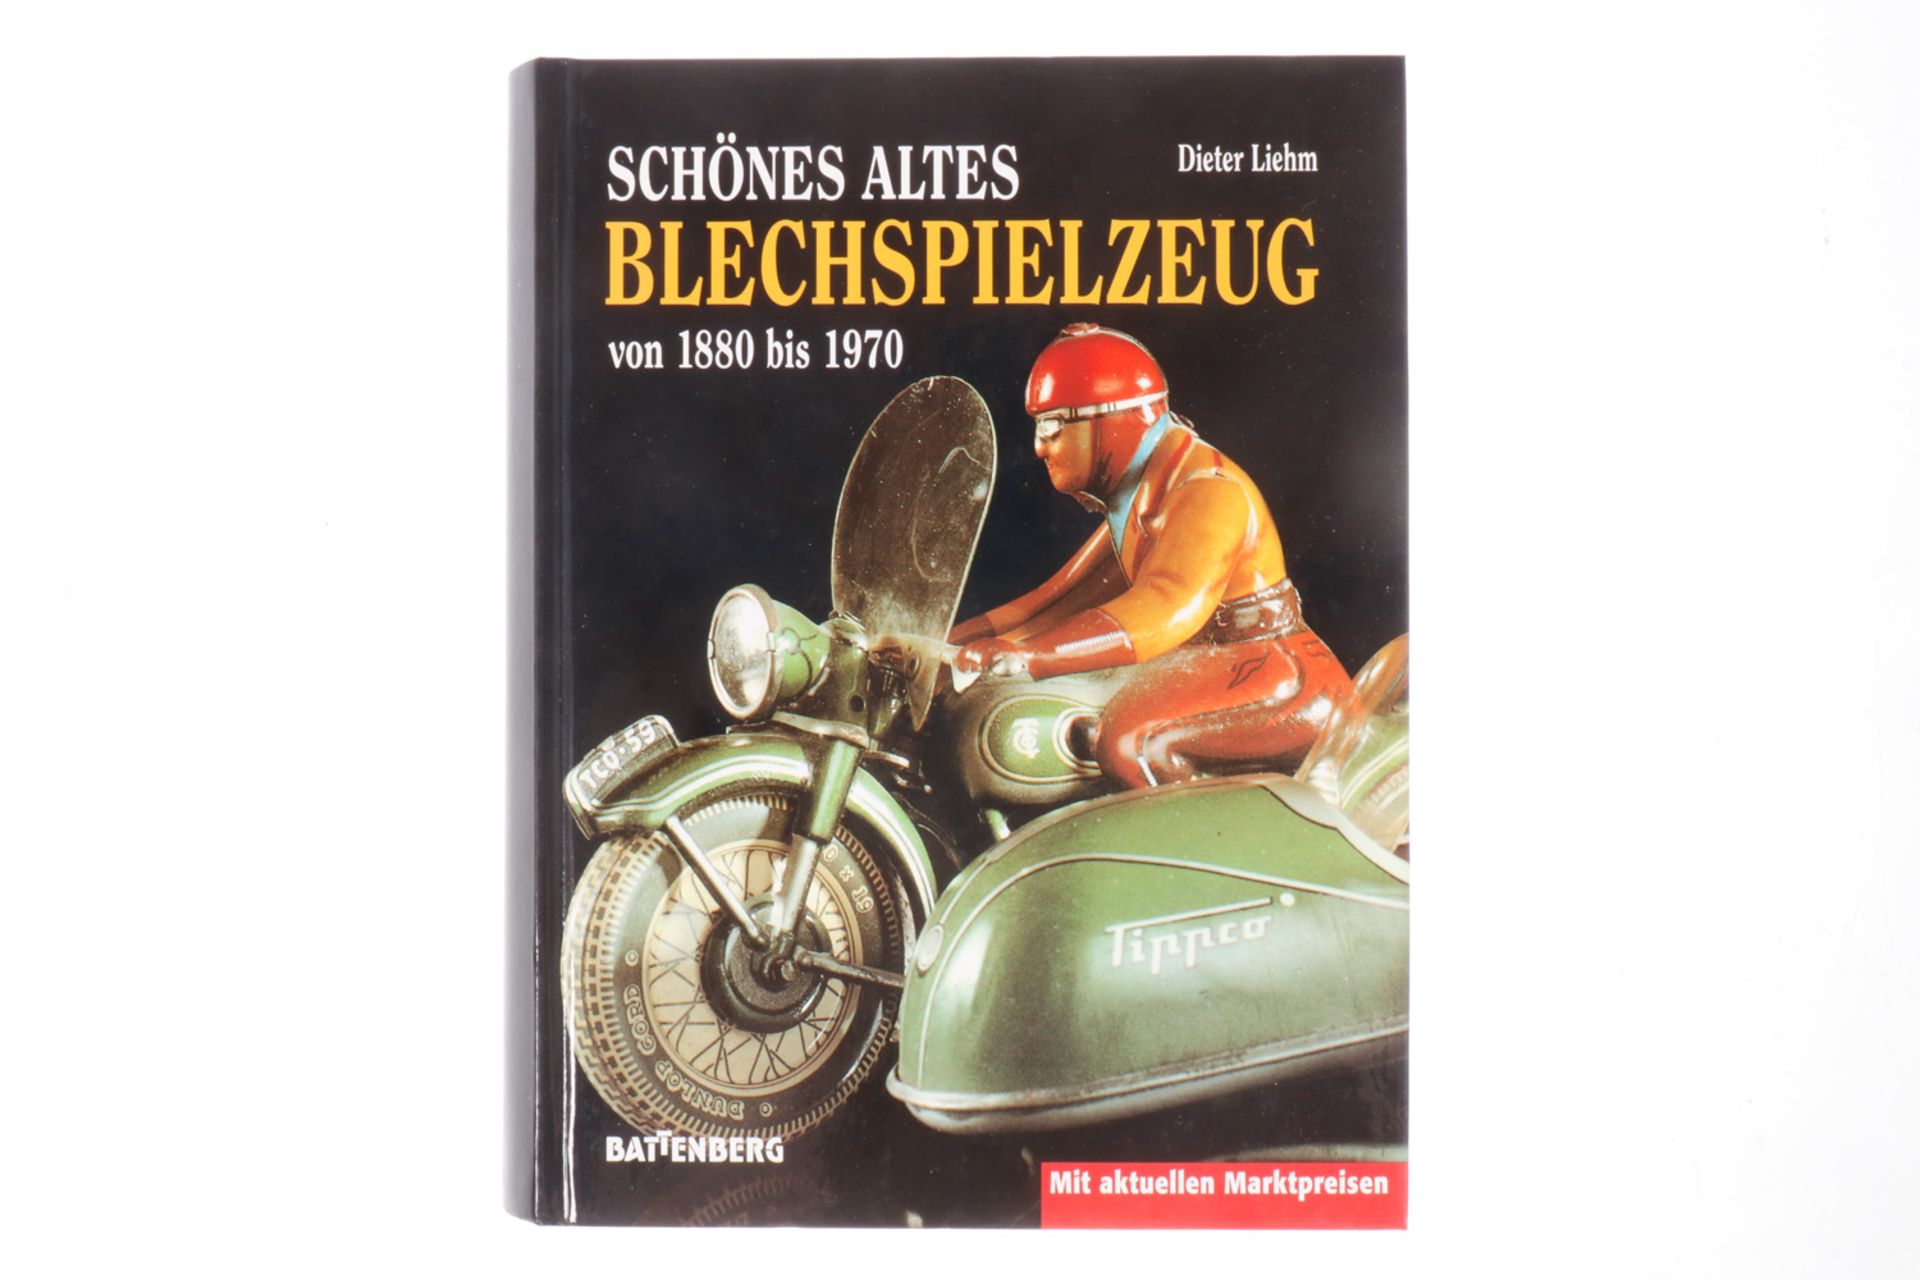 Battenberg-Buch "Schönes altes Blechspielzeug", Alterungsspuren Battenberg-Buch "Schönes altes